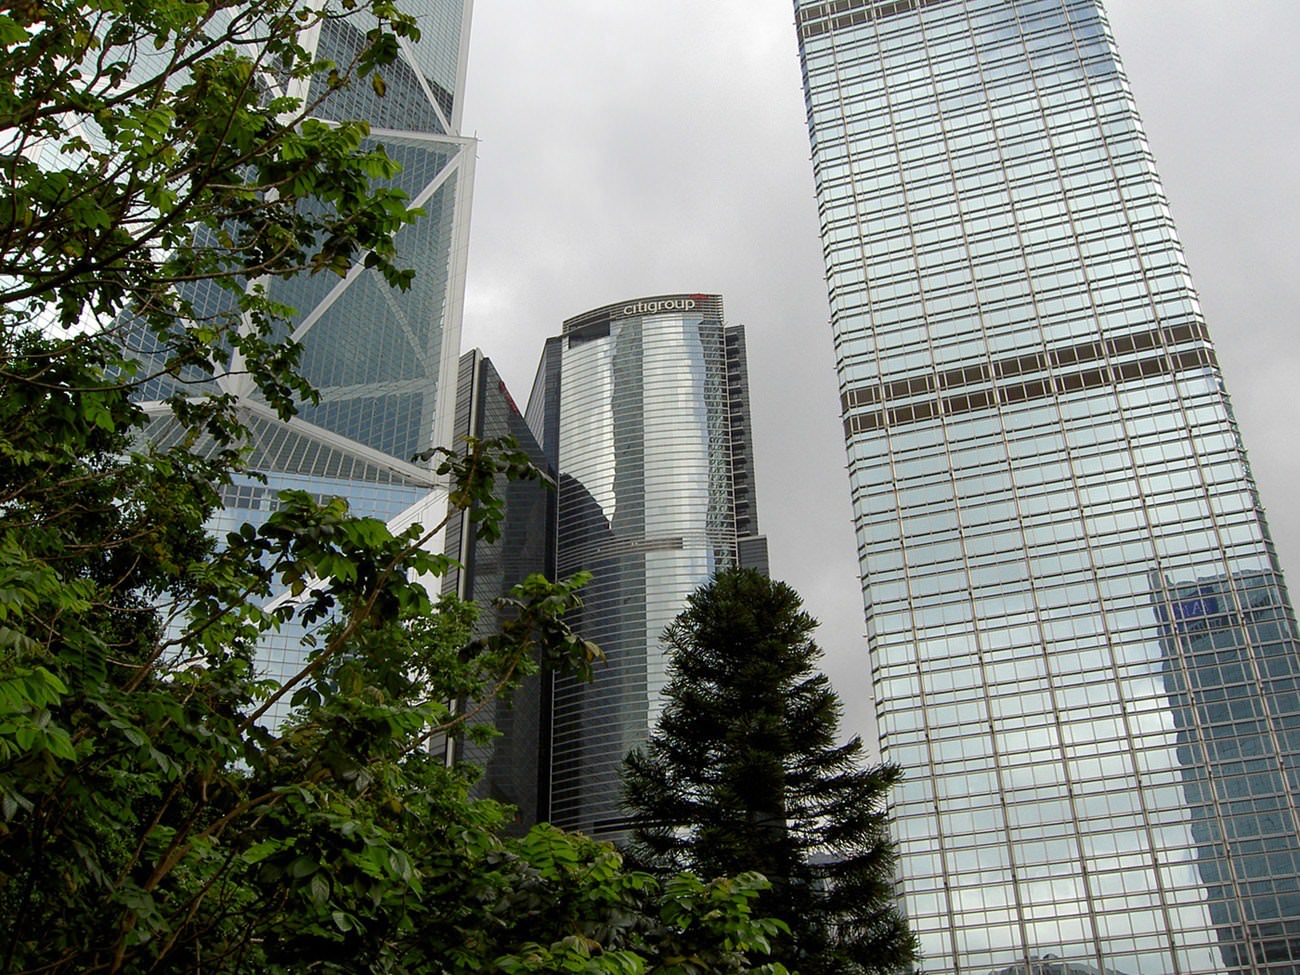 Hong Kong Bank towers